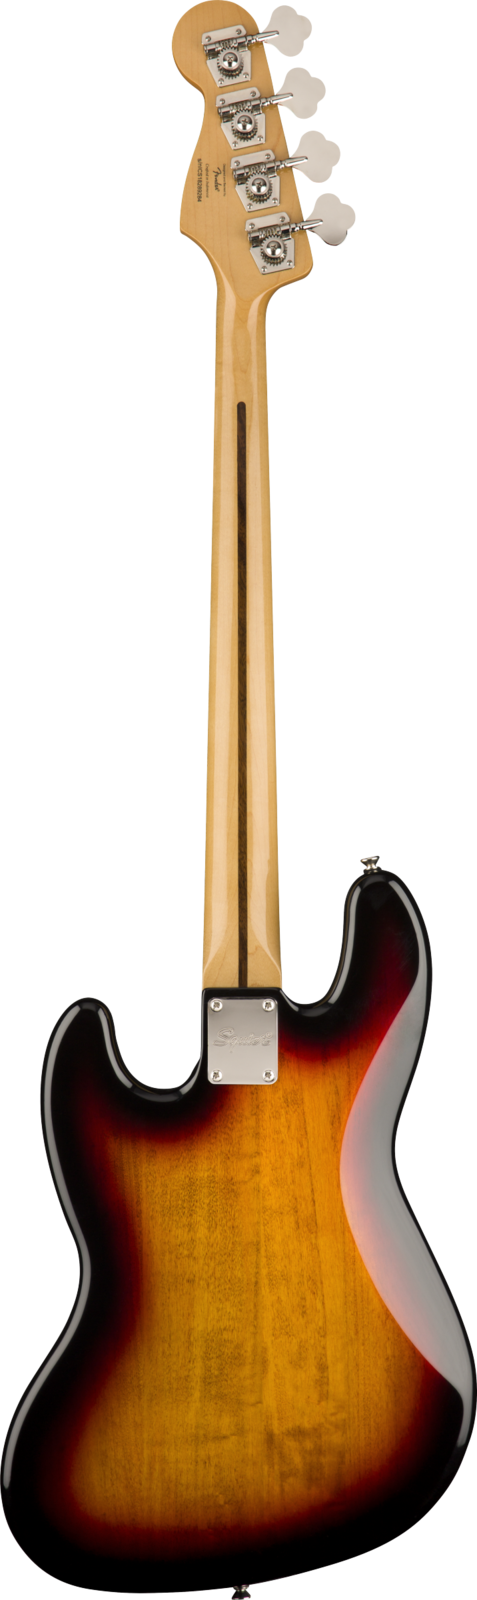 Squier Classic Vibe '60s Jazz Bass Fretless 3-Color Sunburst